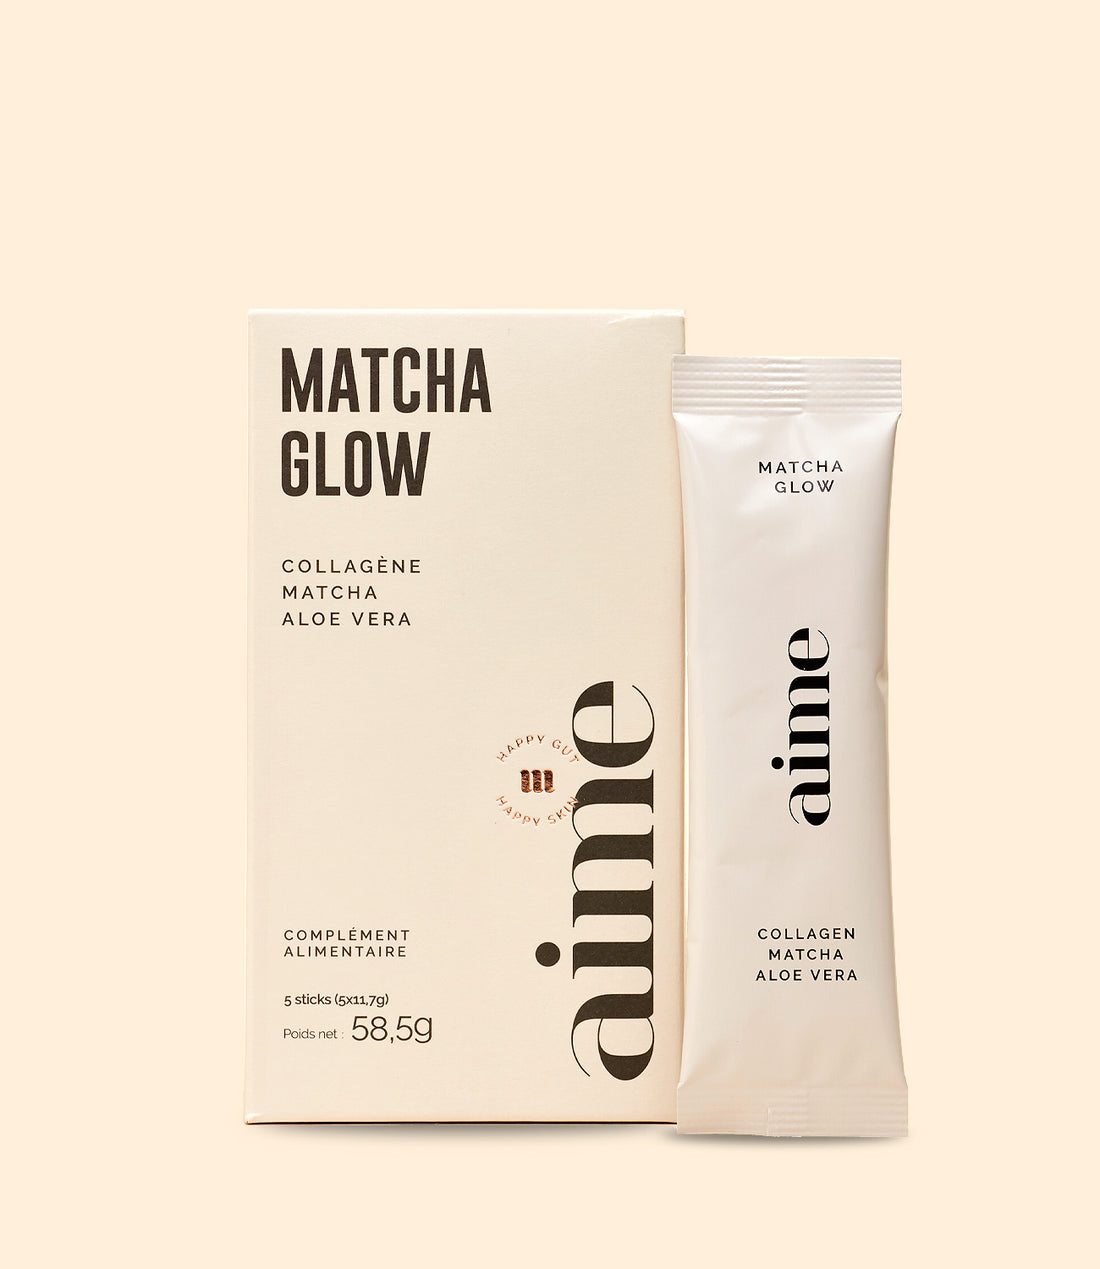 Complément Alimentaire Matcha Glow 5 sticks par Aime Skincare 58,5g